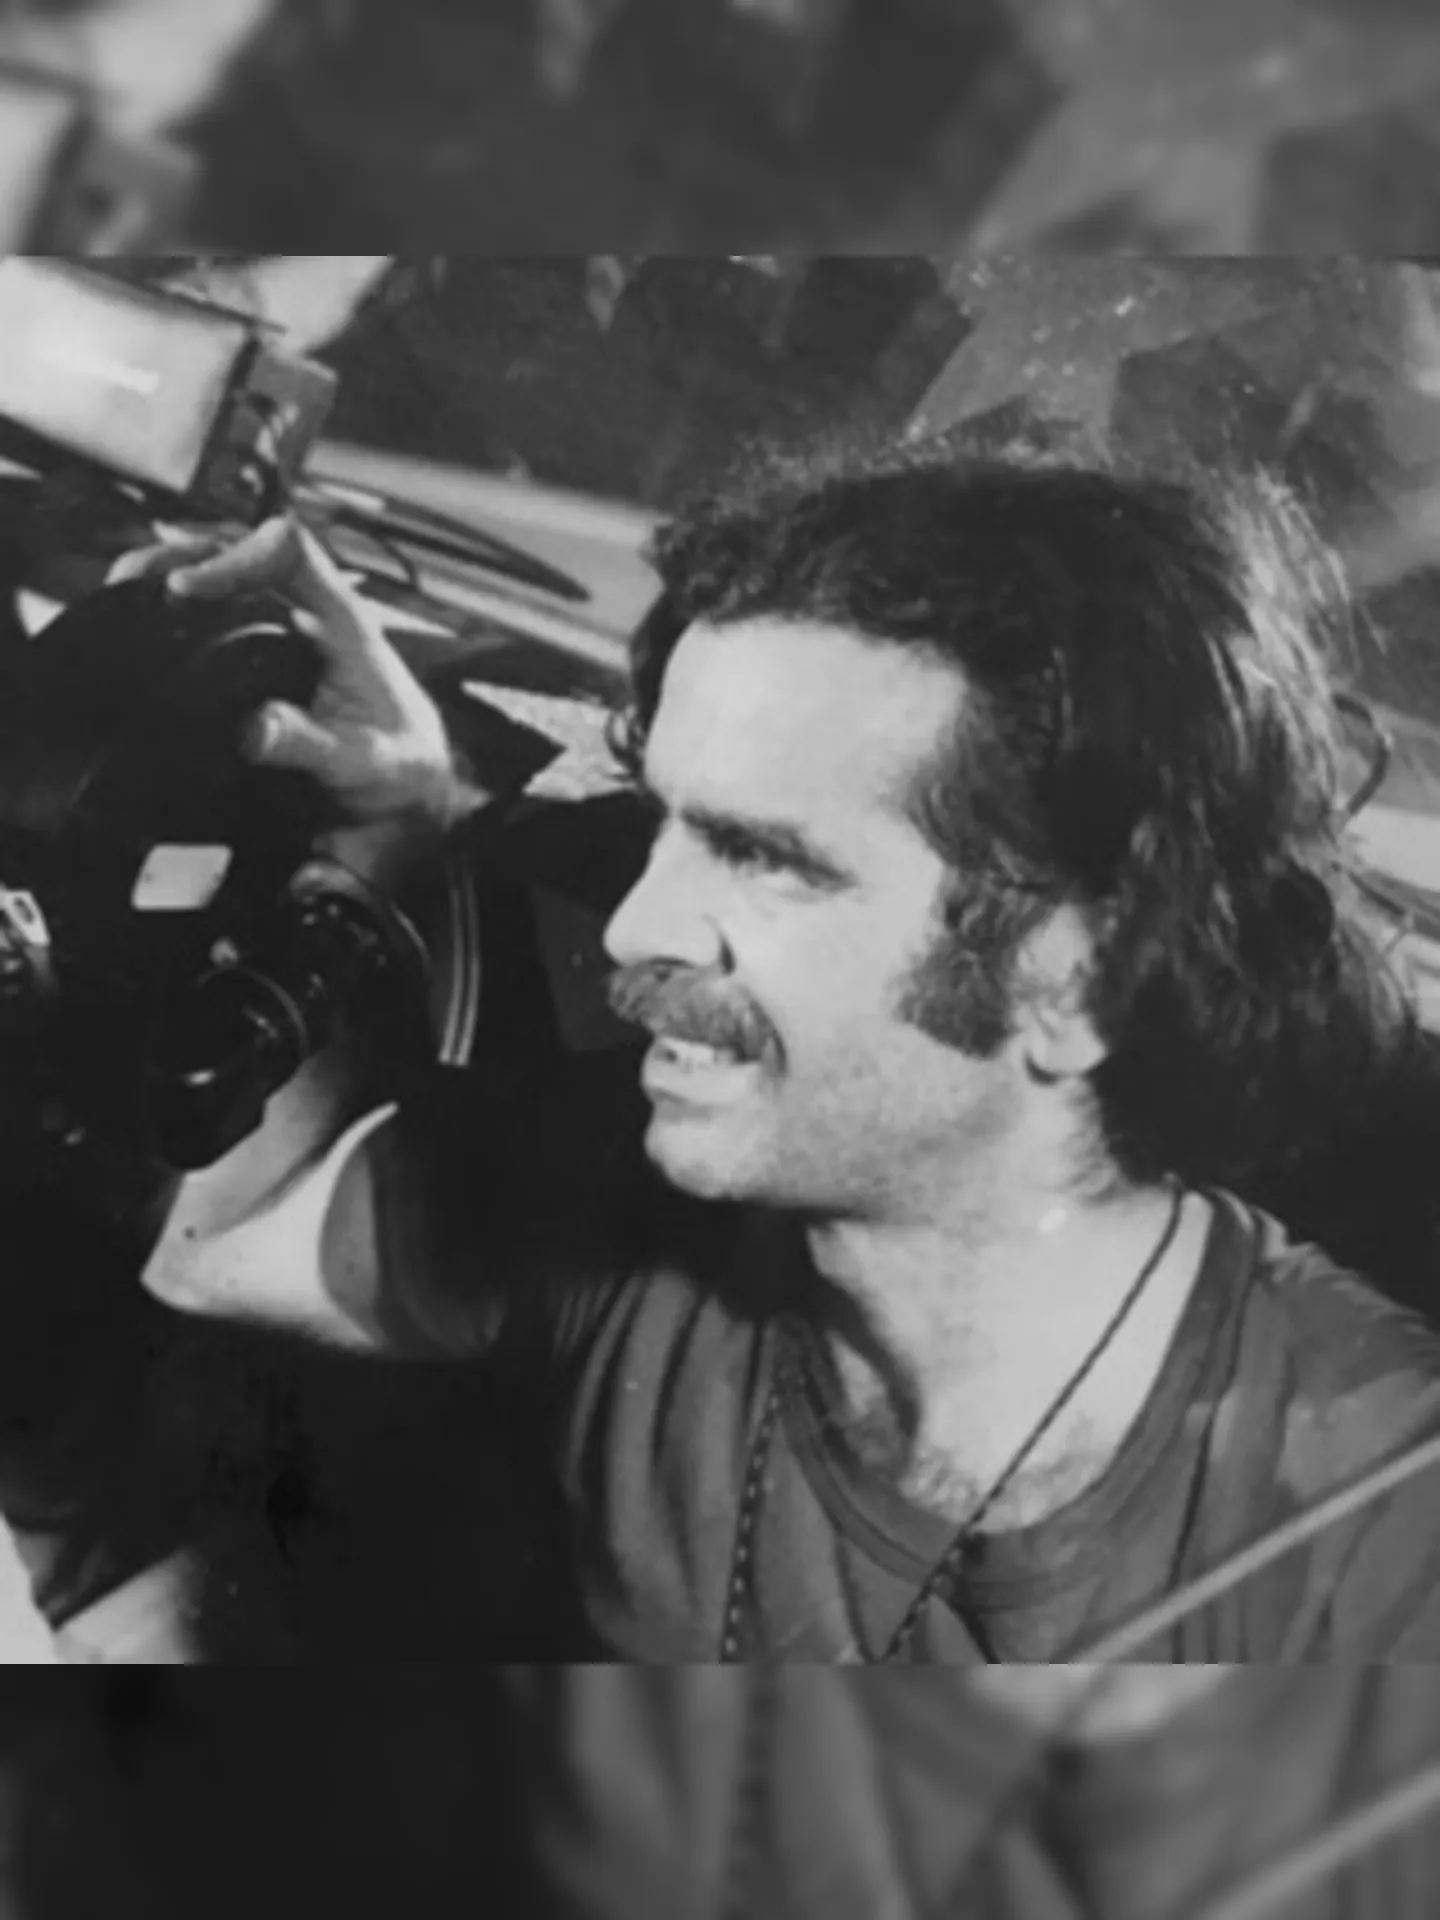 Pedro chegou a ser diretor de fotografia durante o Cinema Novo.